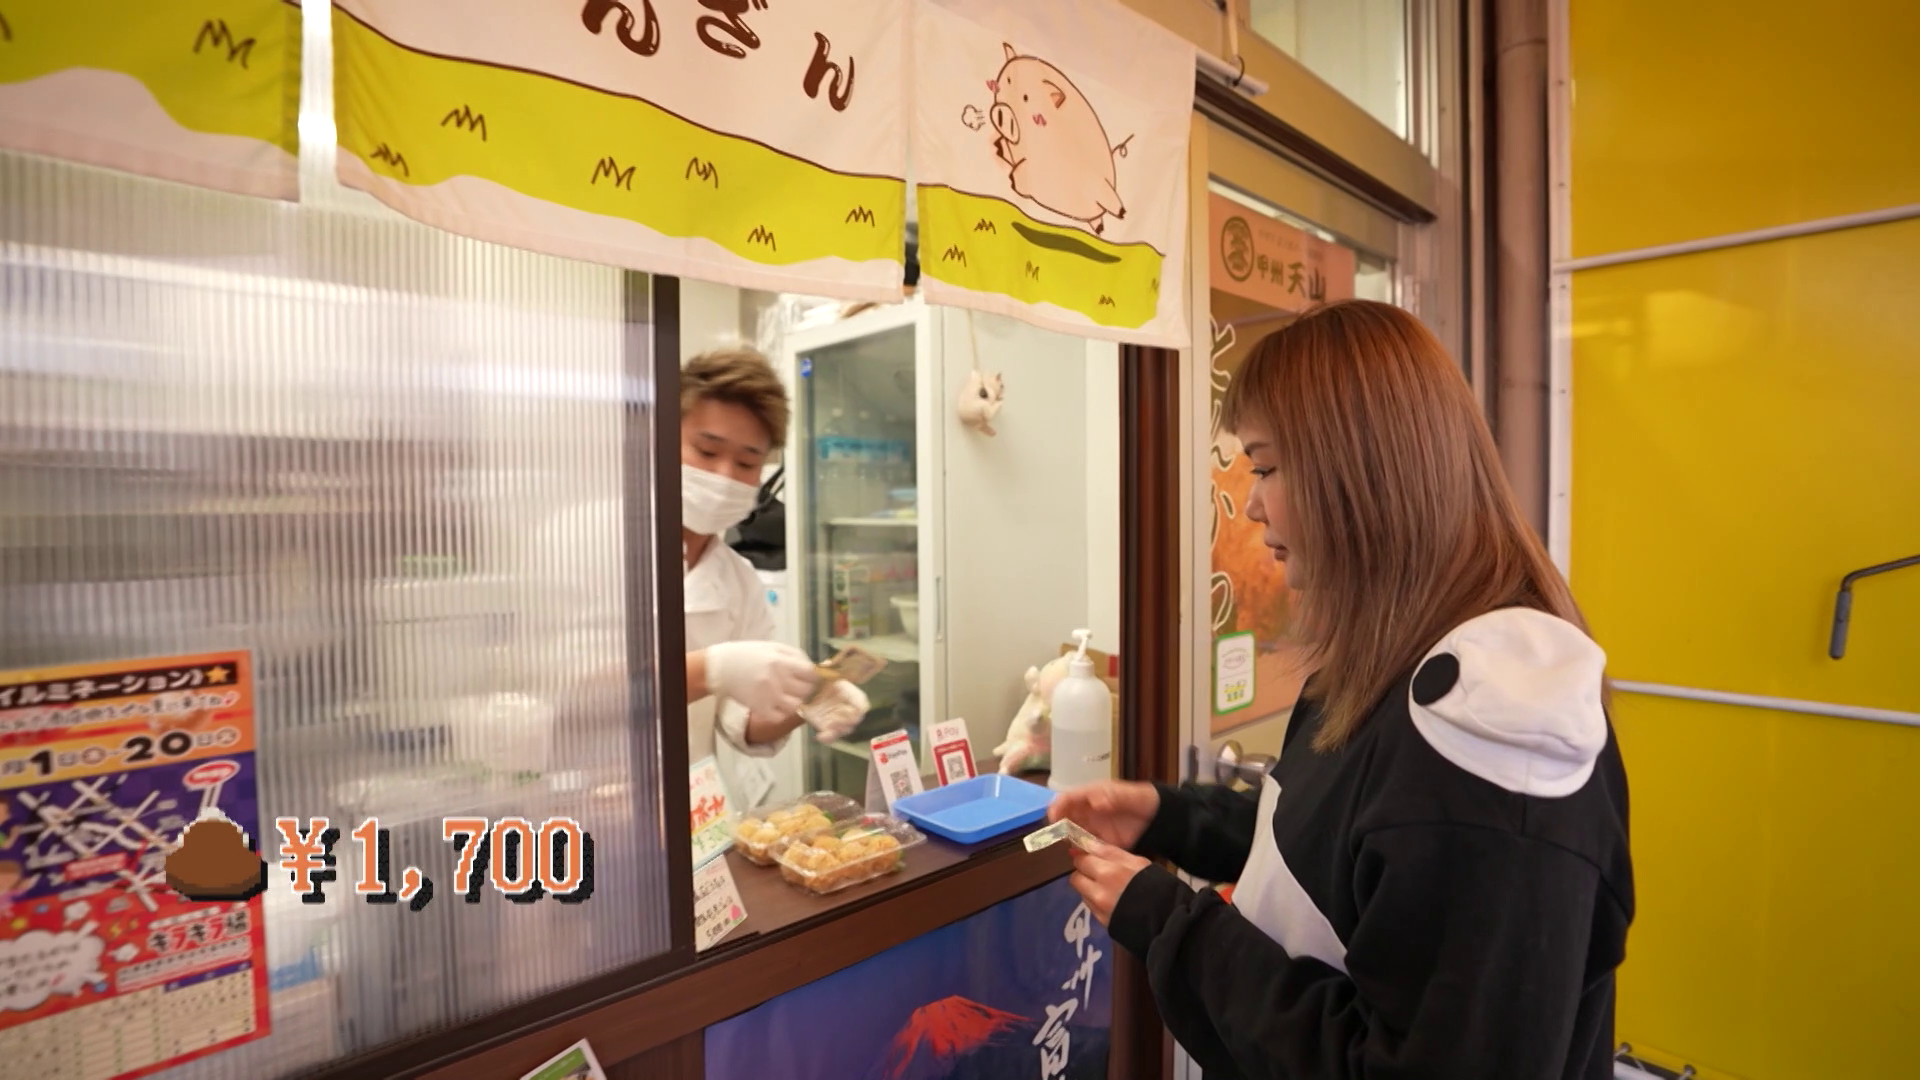 第一站是一盒六粒可樂餅收費 300 yen（17.6 港元）。